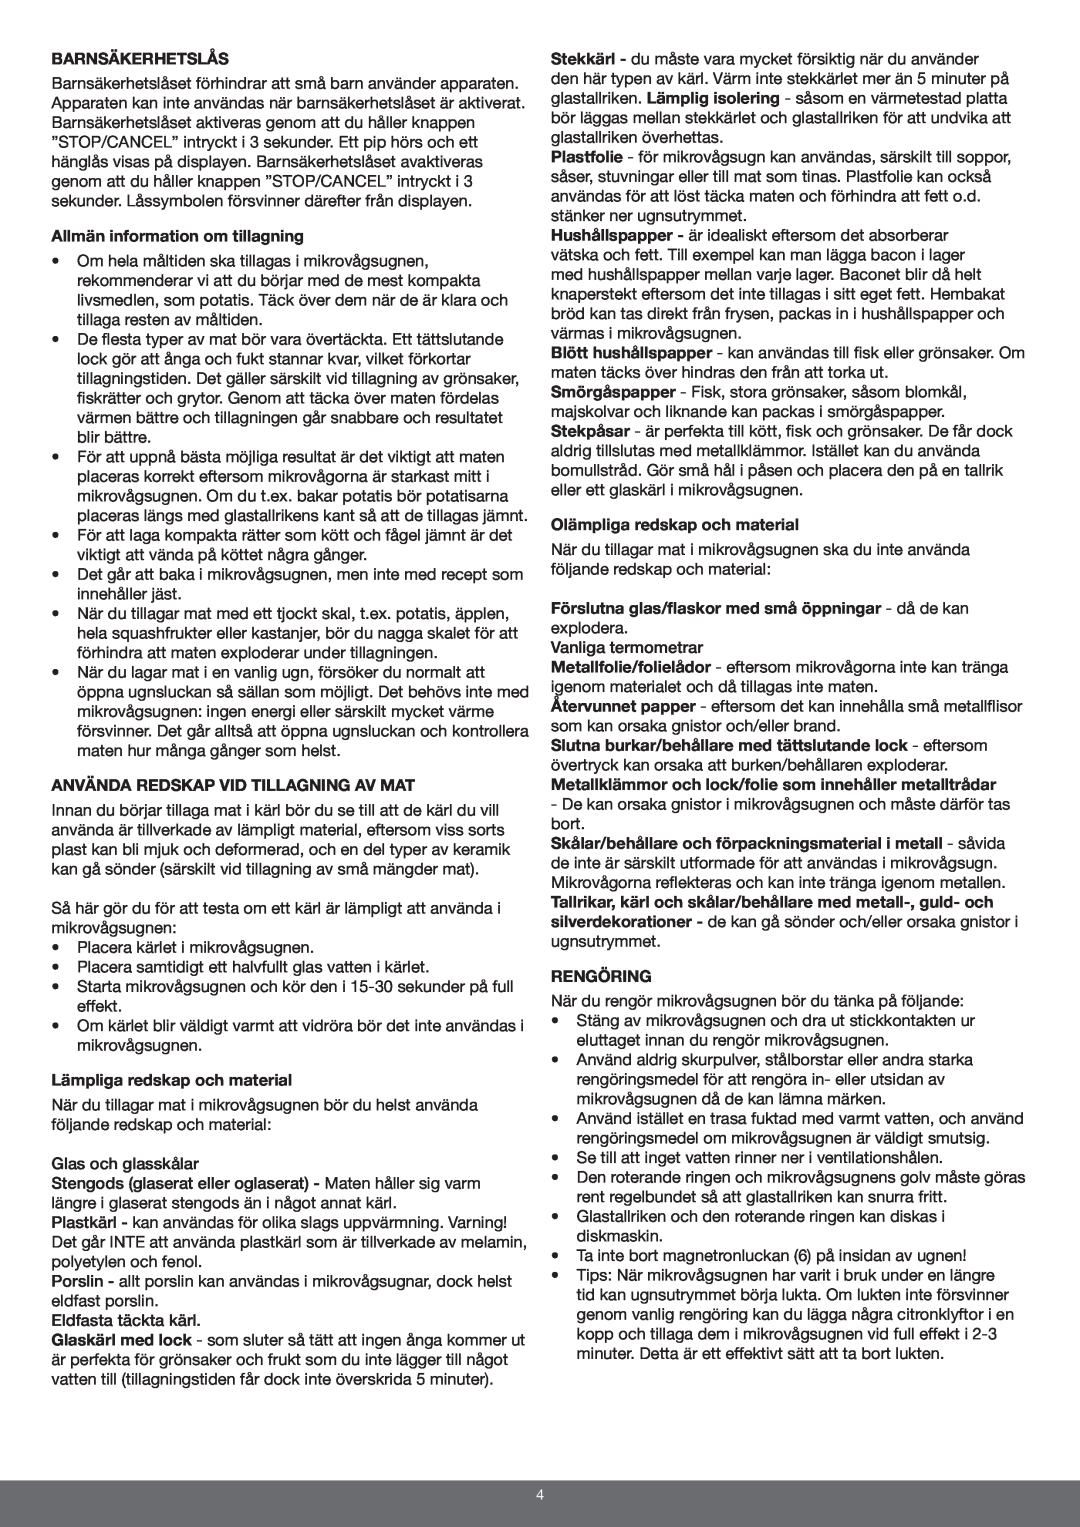 Melissa 653-094 manual Barnsäkerhetslås, Allmän information om tillagning, Använda Redskap Vid Tillagning Av Mat, Rengöring 